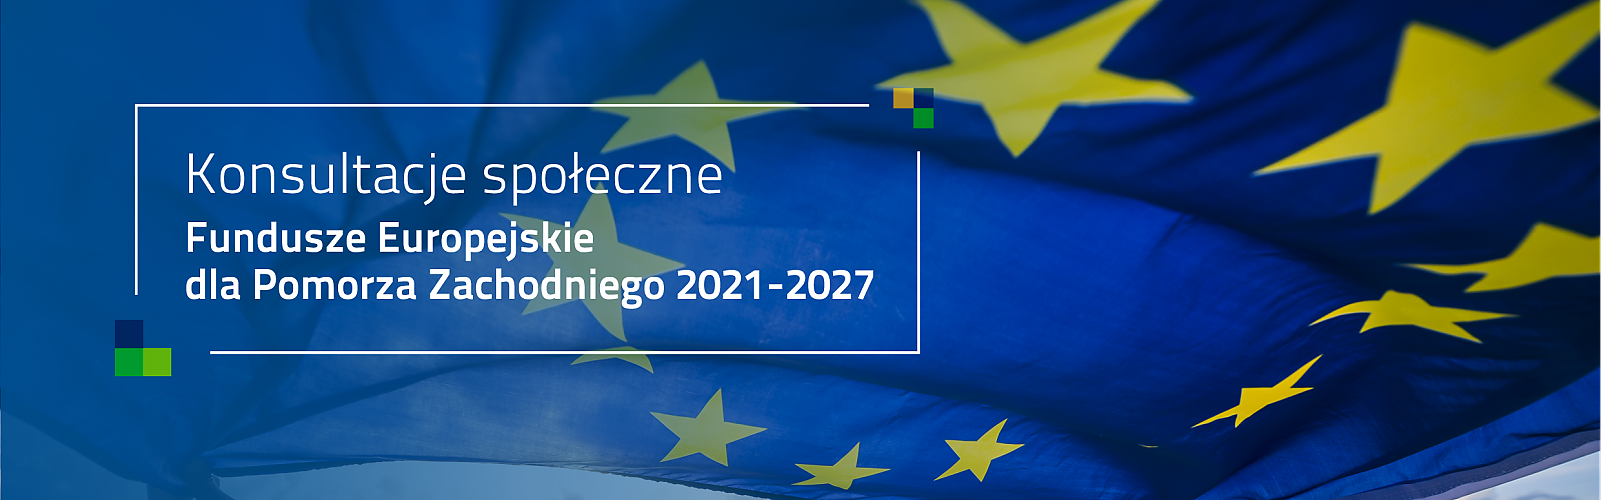 Konsultacje społeczne projektu programu Fundusze Europejskie dla Pomorza Zachodniego 2021-2027